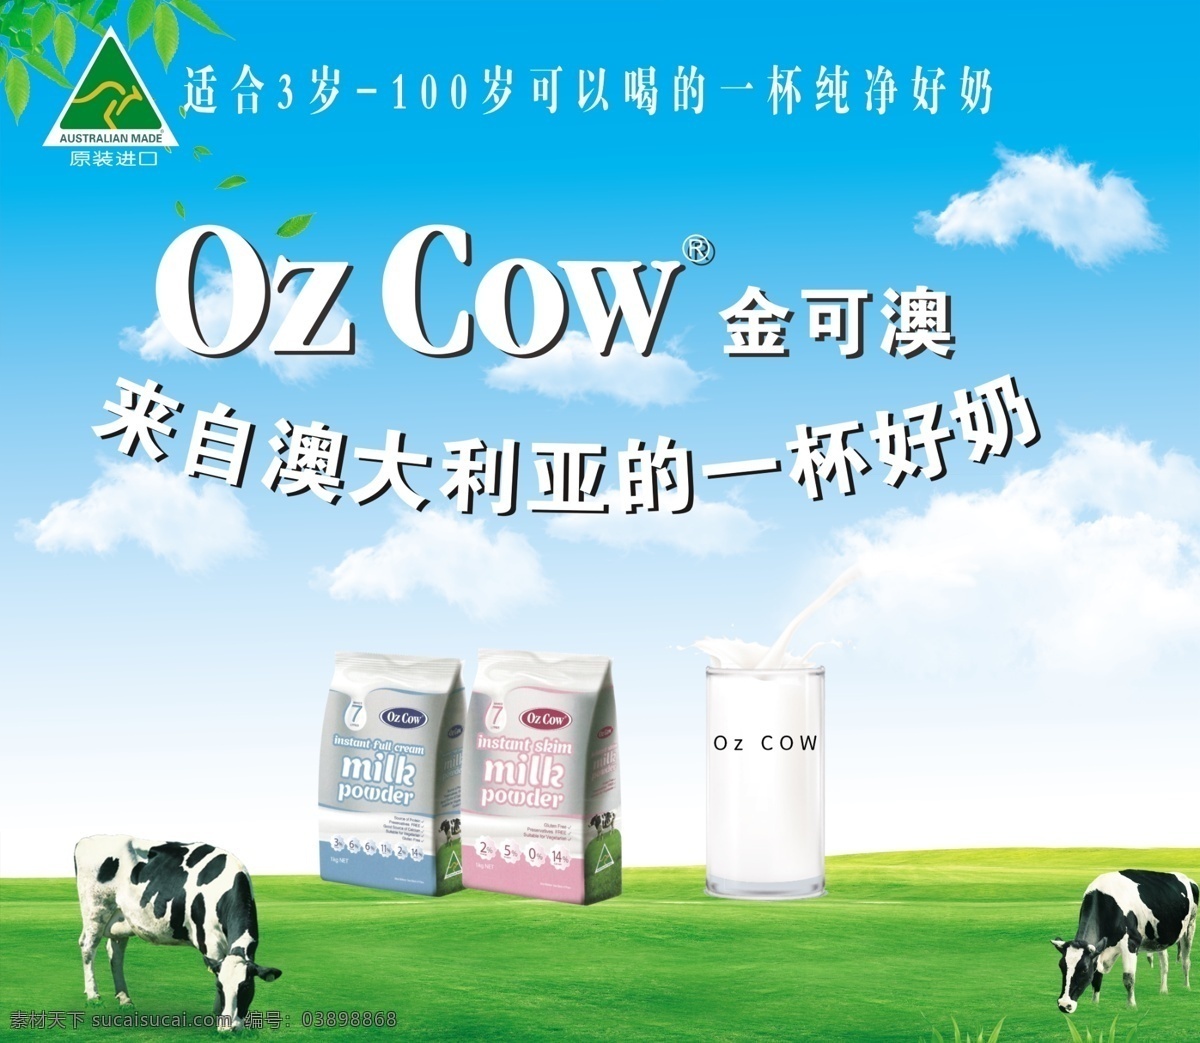 ozcow 金可澳 奶粉 海报 牛奶 袋鼠标志 奶茶 牛扎糖 室内广告设计